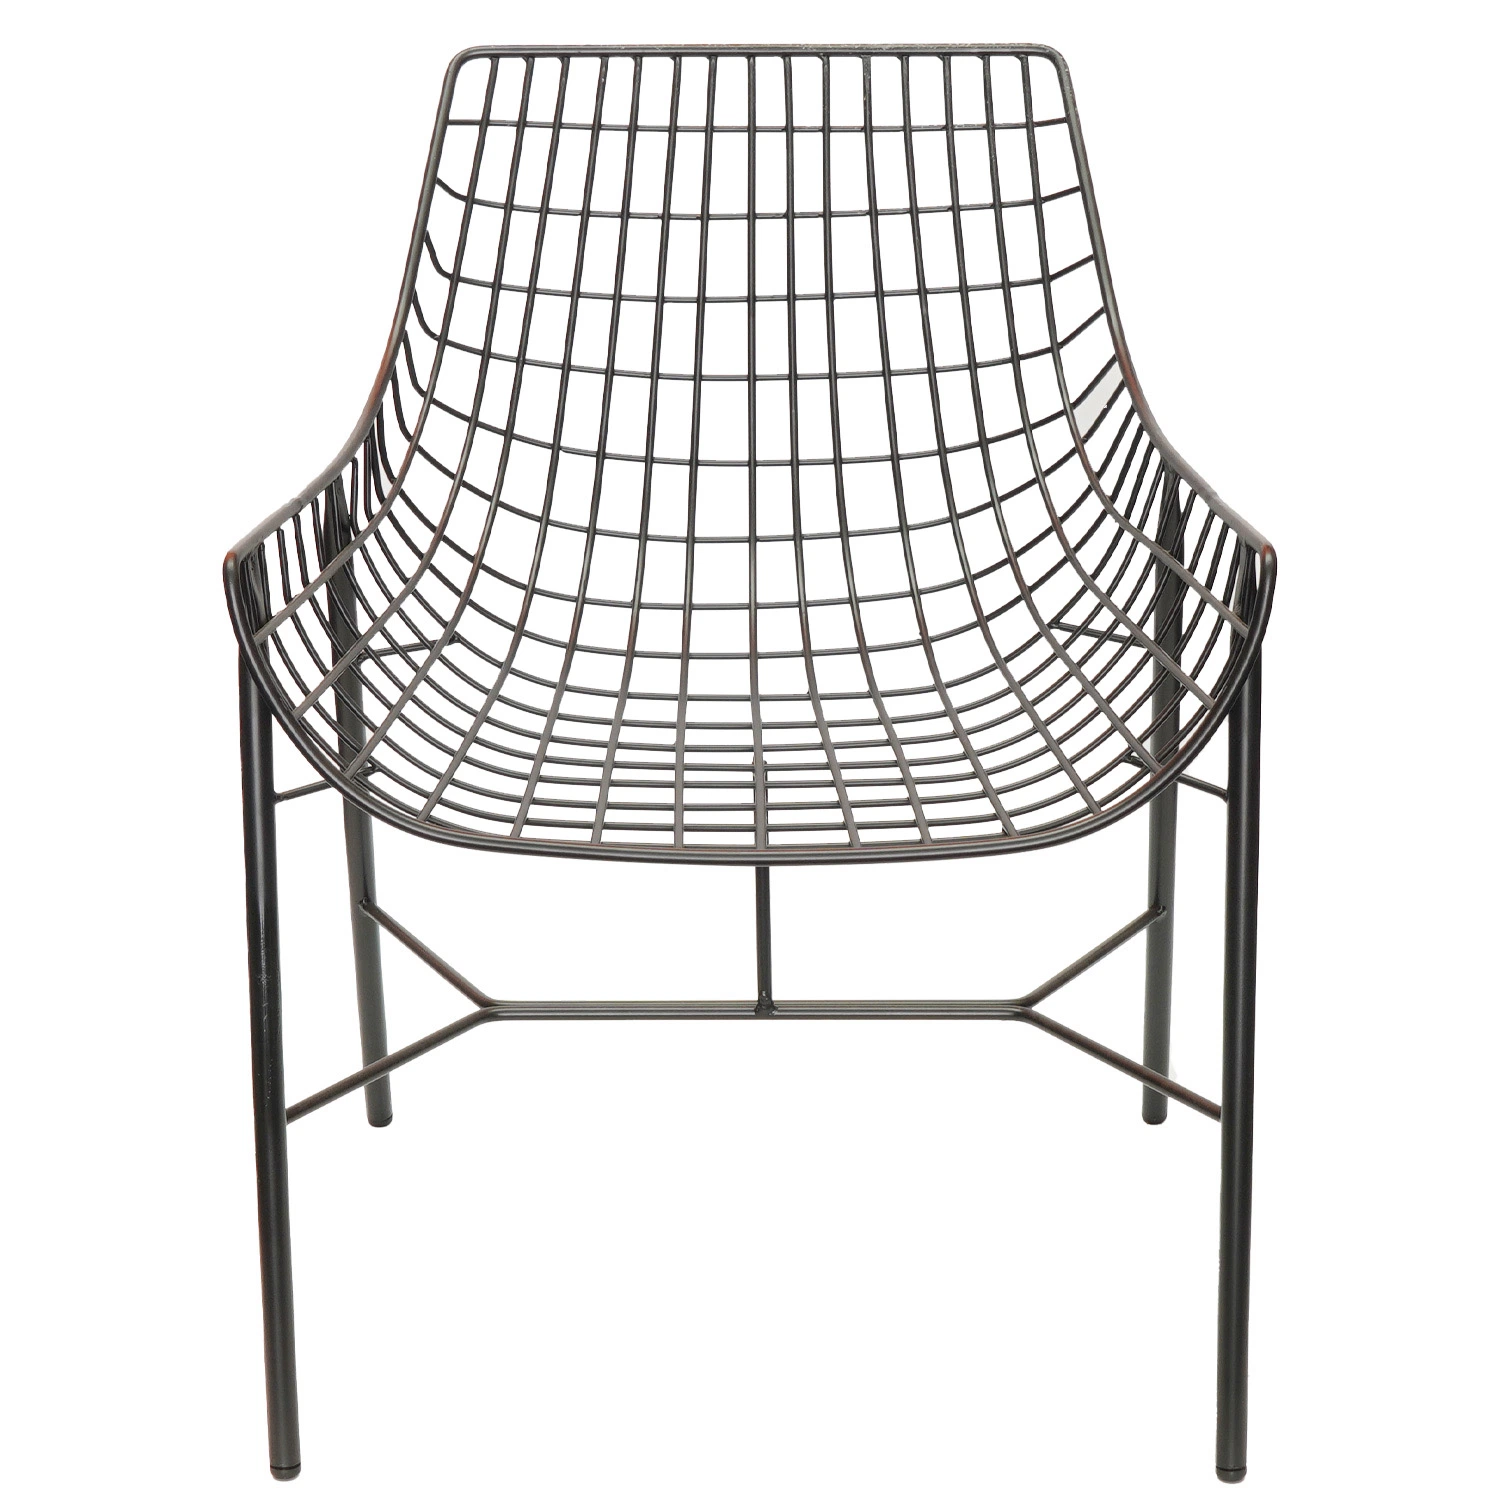 Super Vente Vintage Antique chaise rembourrée forgé Outdoor meubles de jardin pour patio jardin du fil de fer chaise de salle à manger